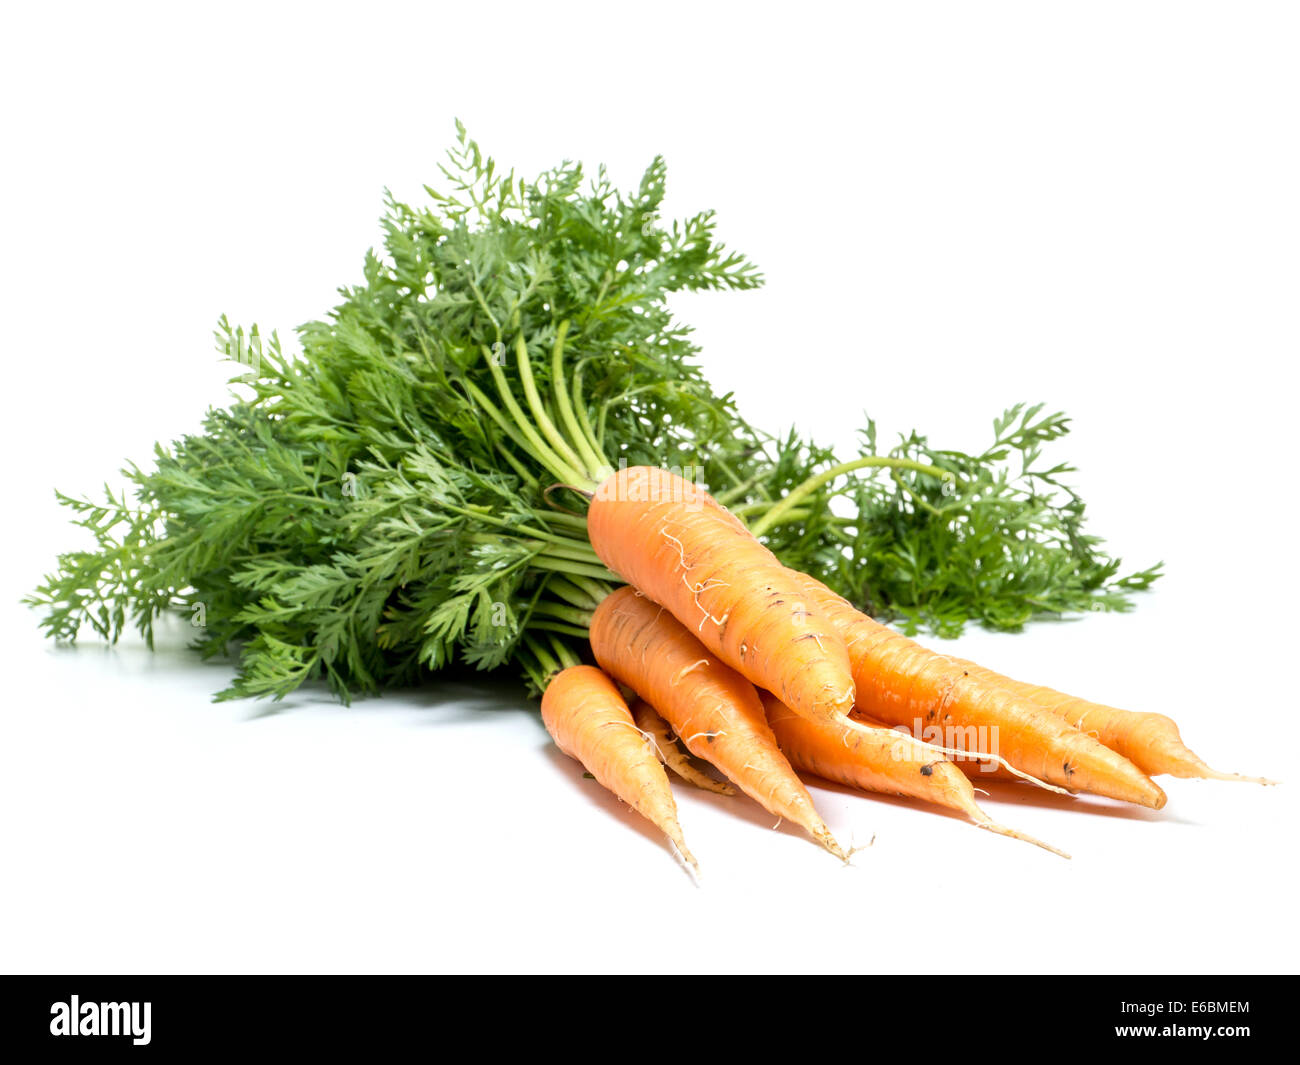 Botte de carottes fraîches shot on white Banque D'Images